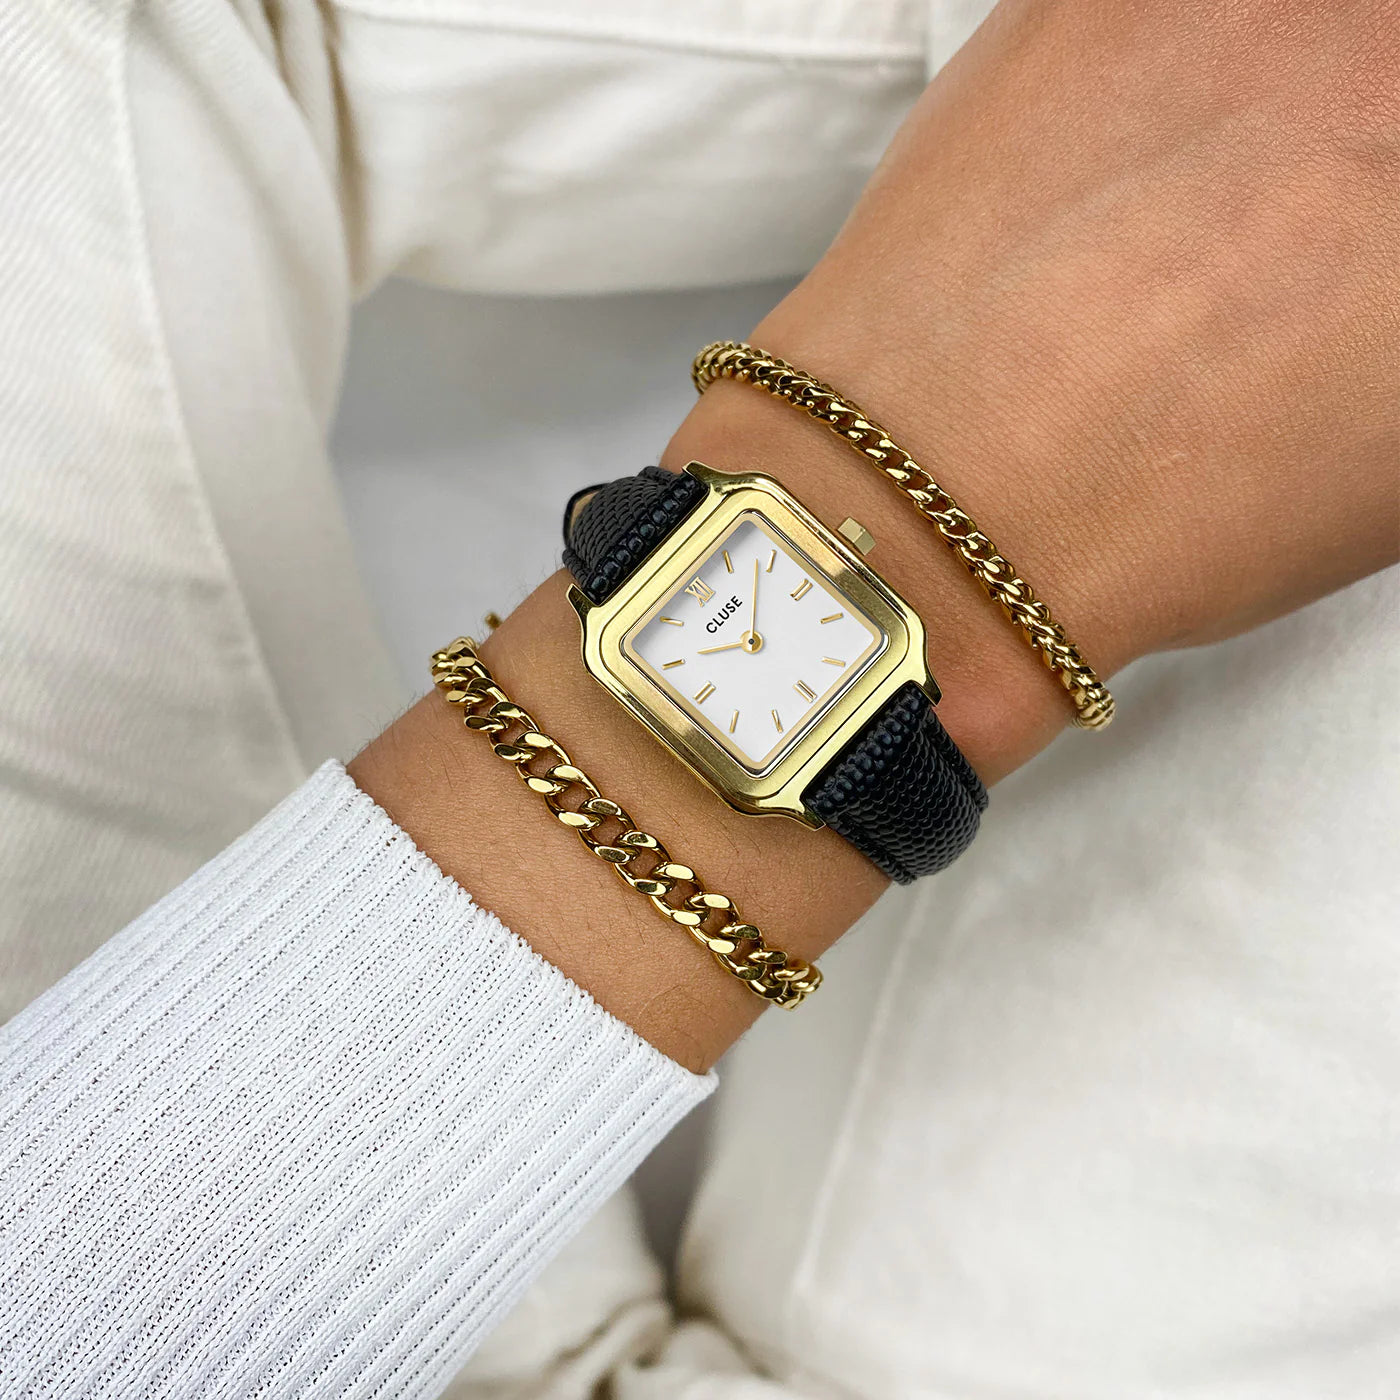 Frau trägt die Cluse Stahl-Uhr "Gracieuse Petite" mit einem gelbgold-farbenem Gehäuse und weißem Zifferblatt am schwarzen Lederband an ihrem Handgelenk